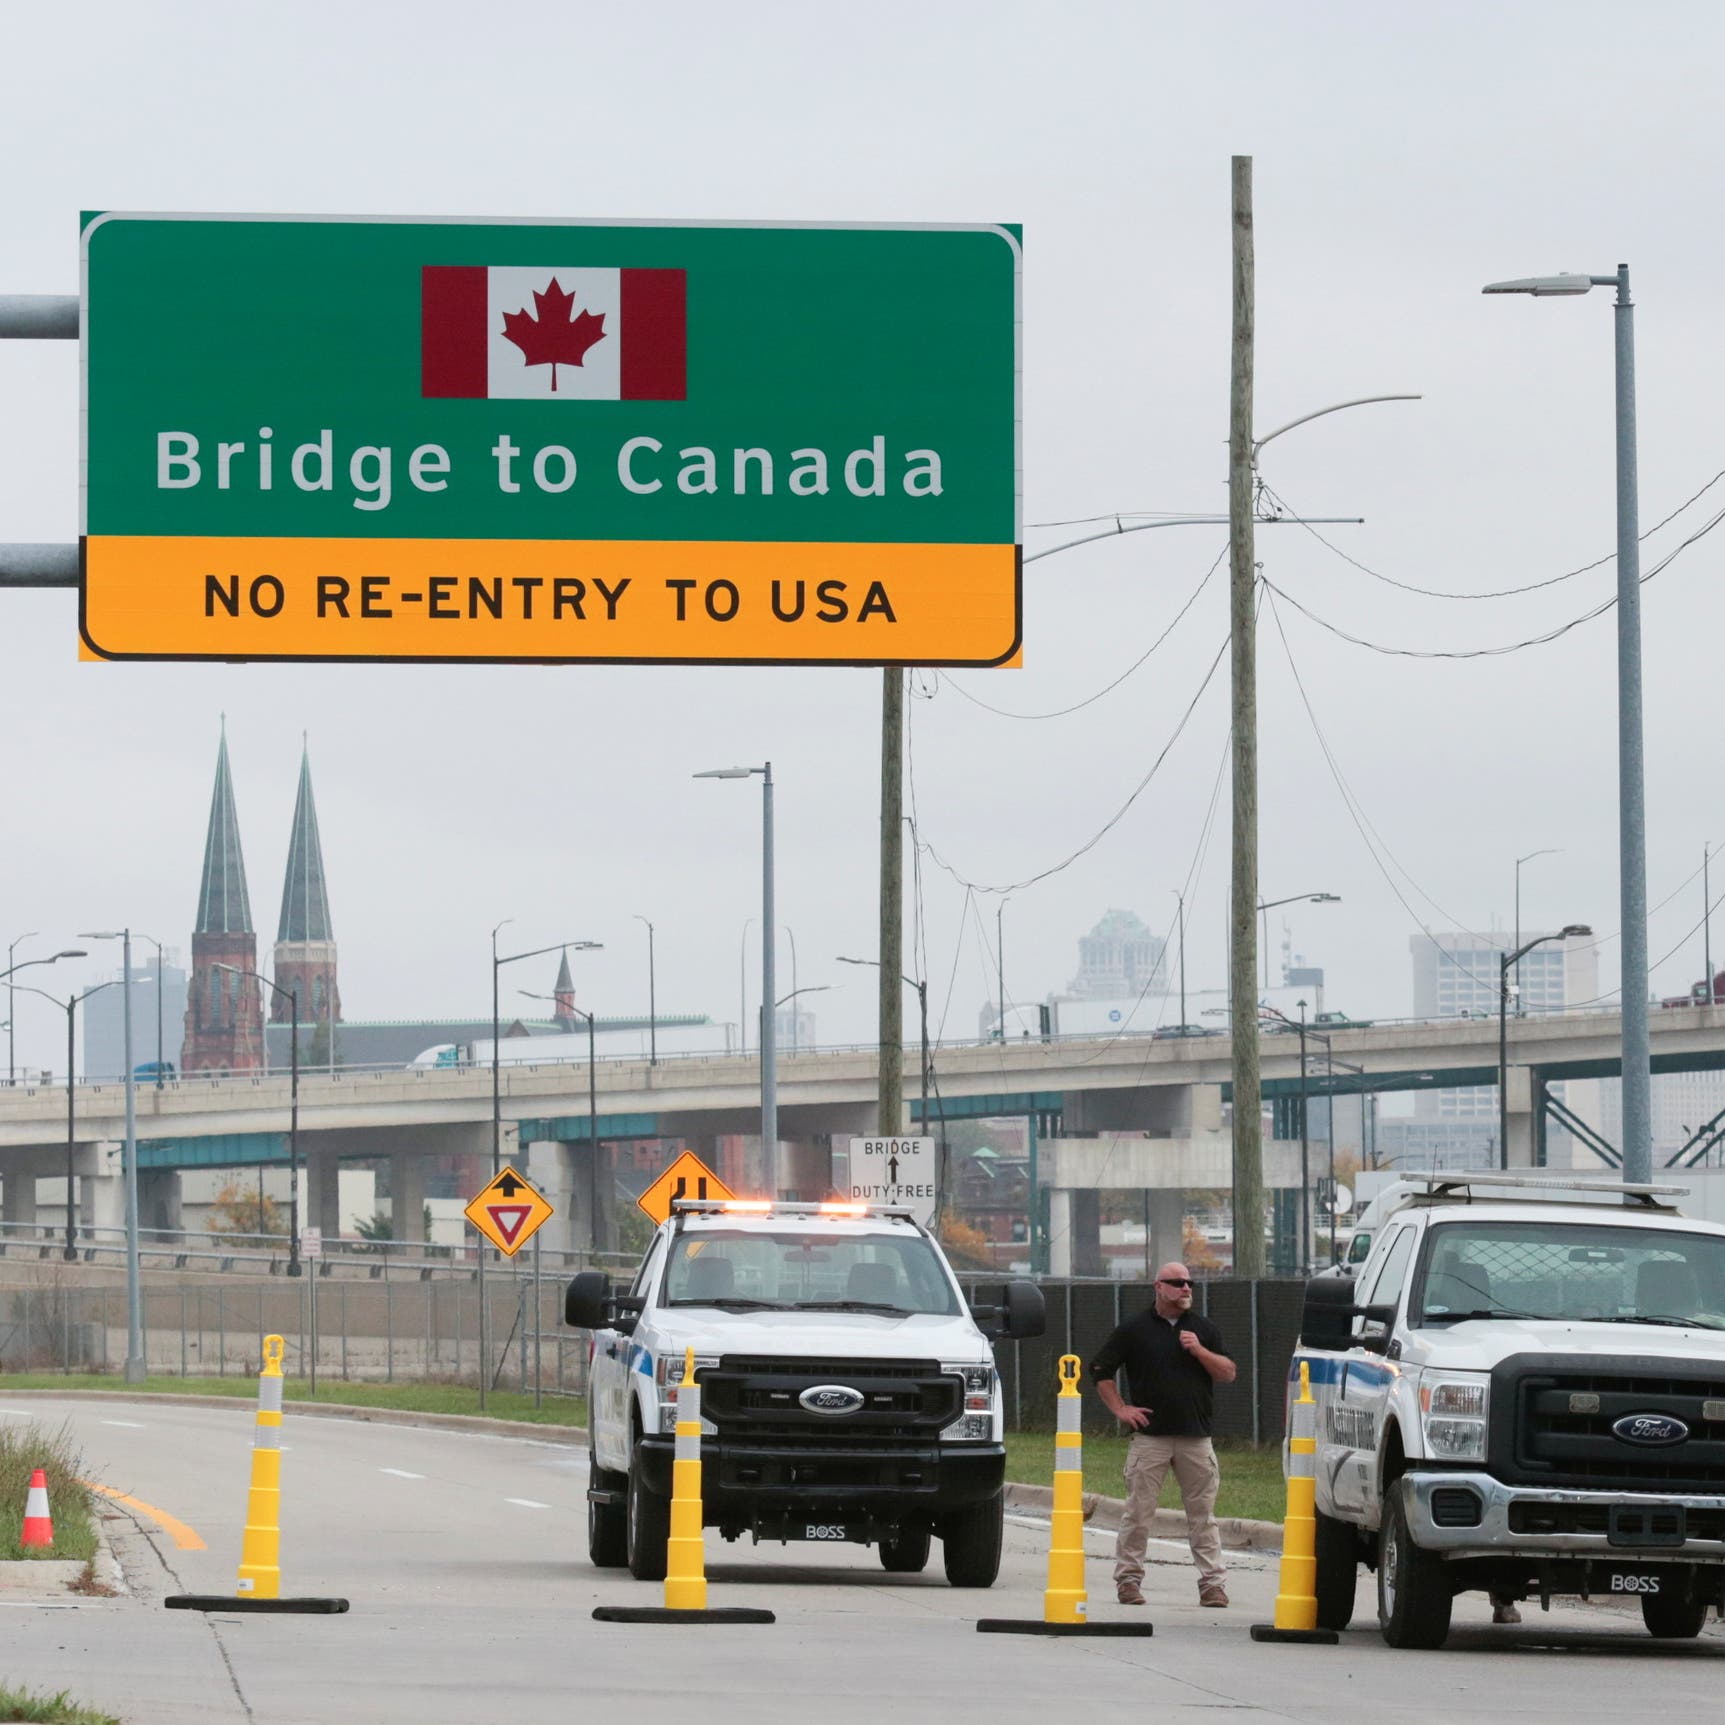 أخيراً فتح جسر "امباسادور" بين أميركا وكندا.. فما أهميته؟